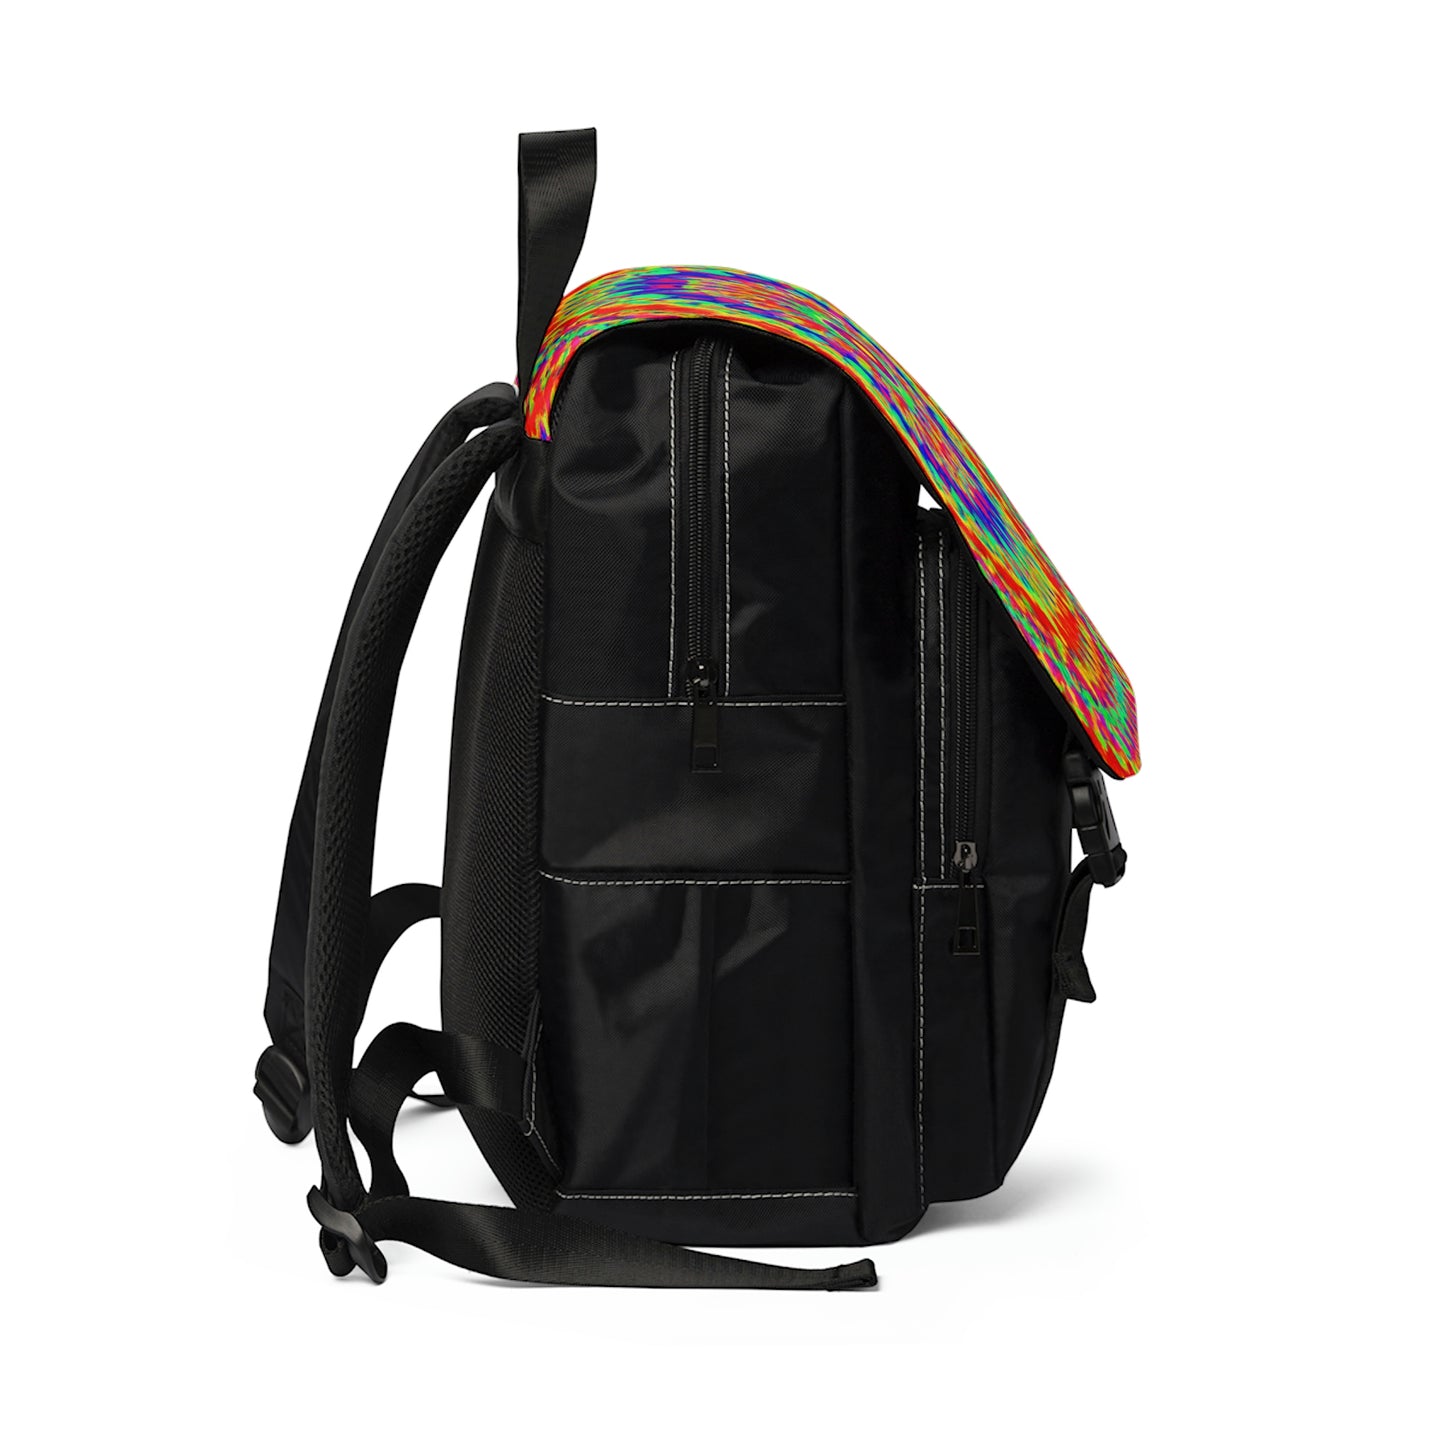 Magnuson. - Psychedelic Shoulder Travel Backpack Bag